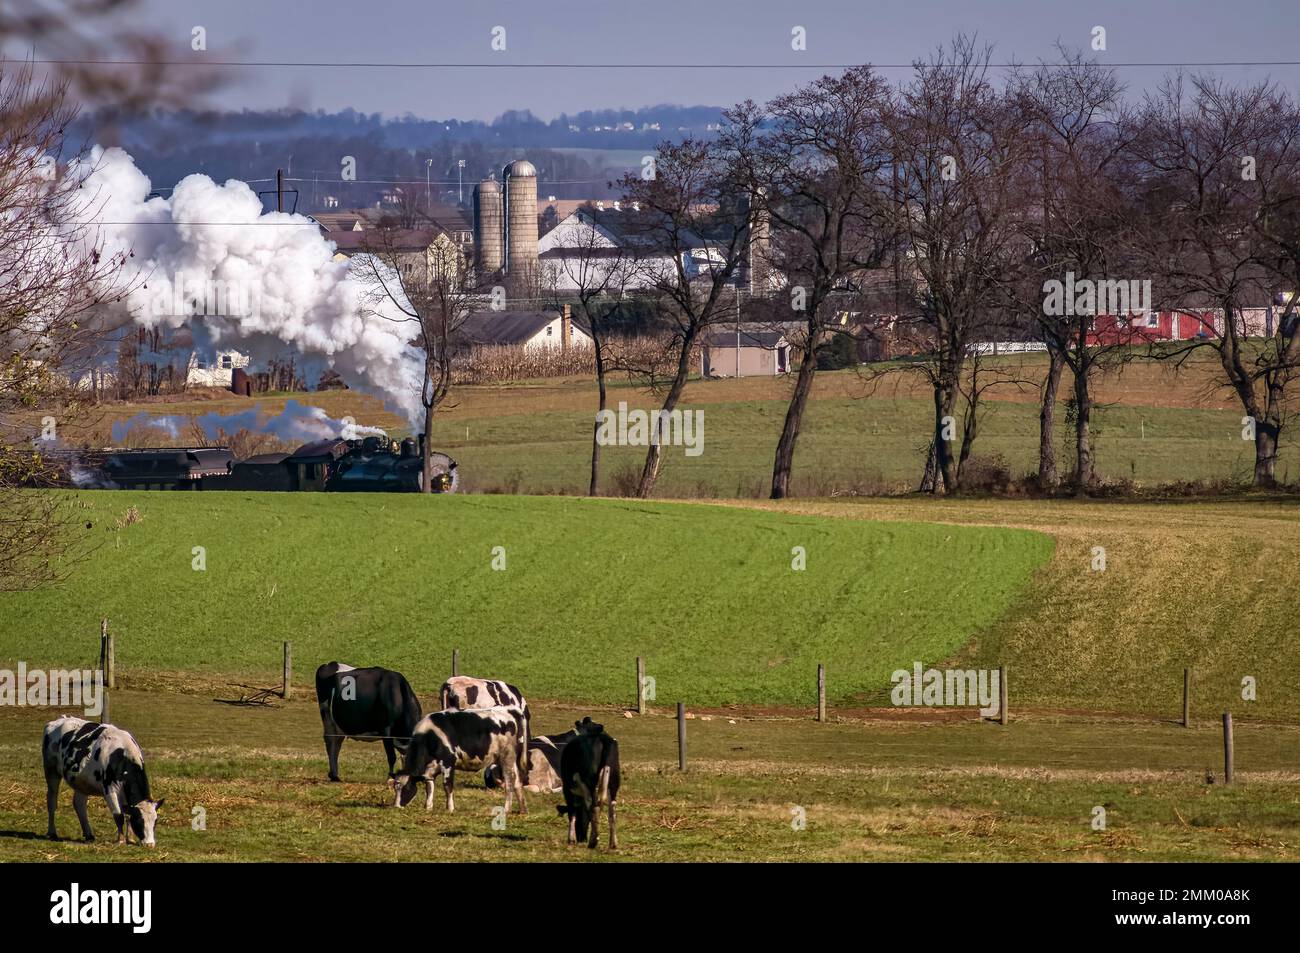 Une vue d'un train de passagers antique approchant avec un troupeau de vaches regardant, un jour d'automne Banque D'Images